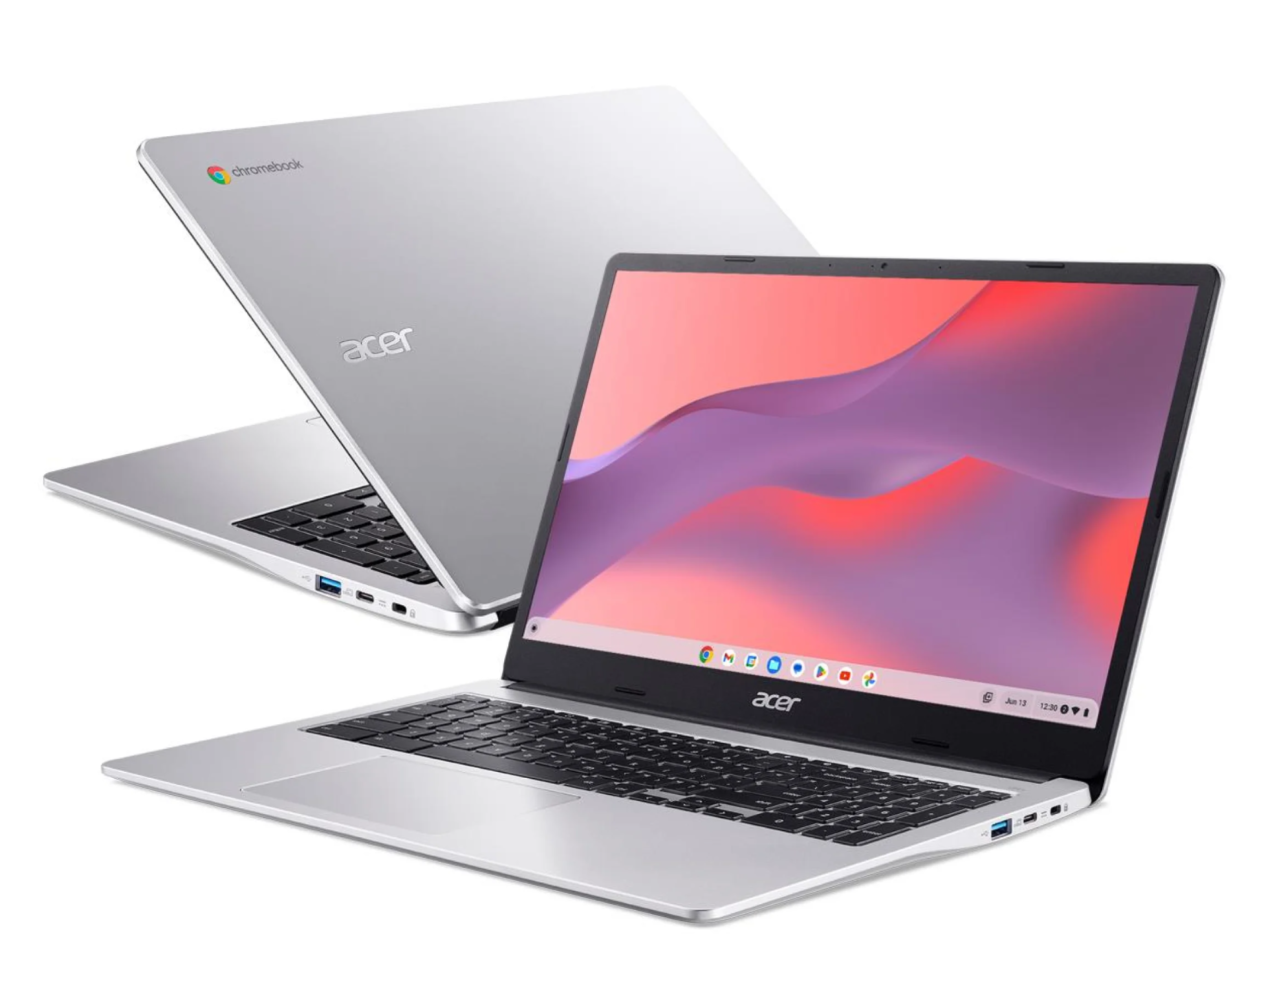 Dwa srebrne laptopy Acer Chromebook w pozycji otwartej z widokiem na ekrany i klawiatury.